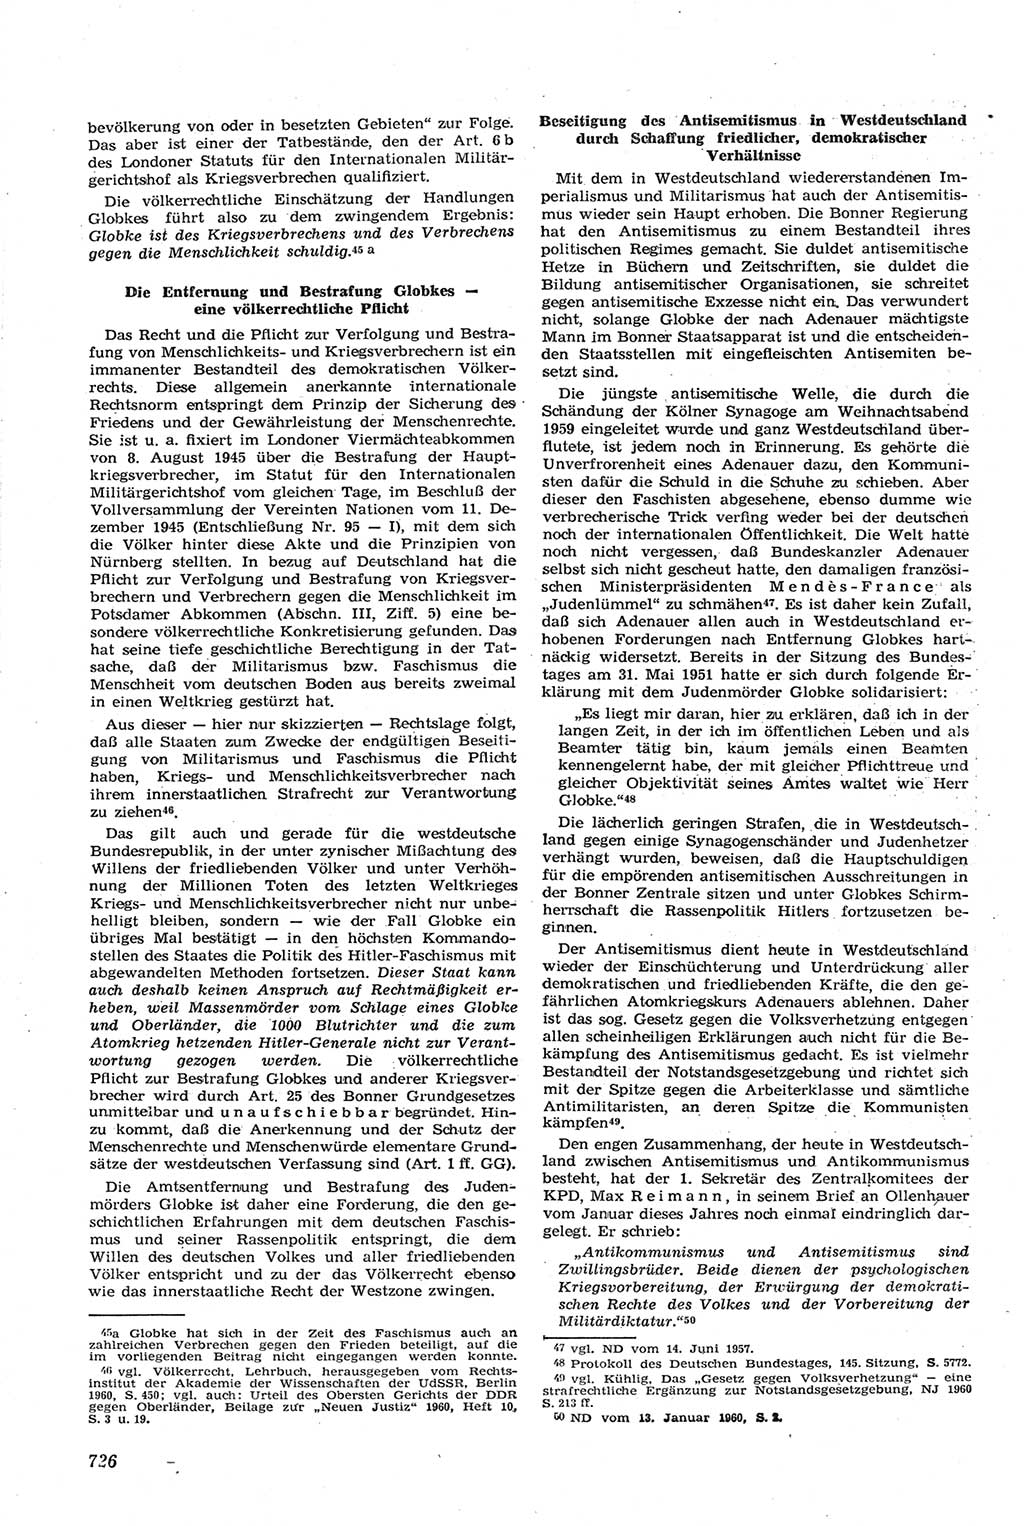 Neue Justiz (NJ), Zeitschrift für Recht und Rechtswissenschaft [Deutsche Demokratische Republik (DDR)], 14. Jahrgang 1960, Seite 726 (NJ DDR 1960, S. 726)